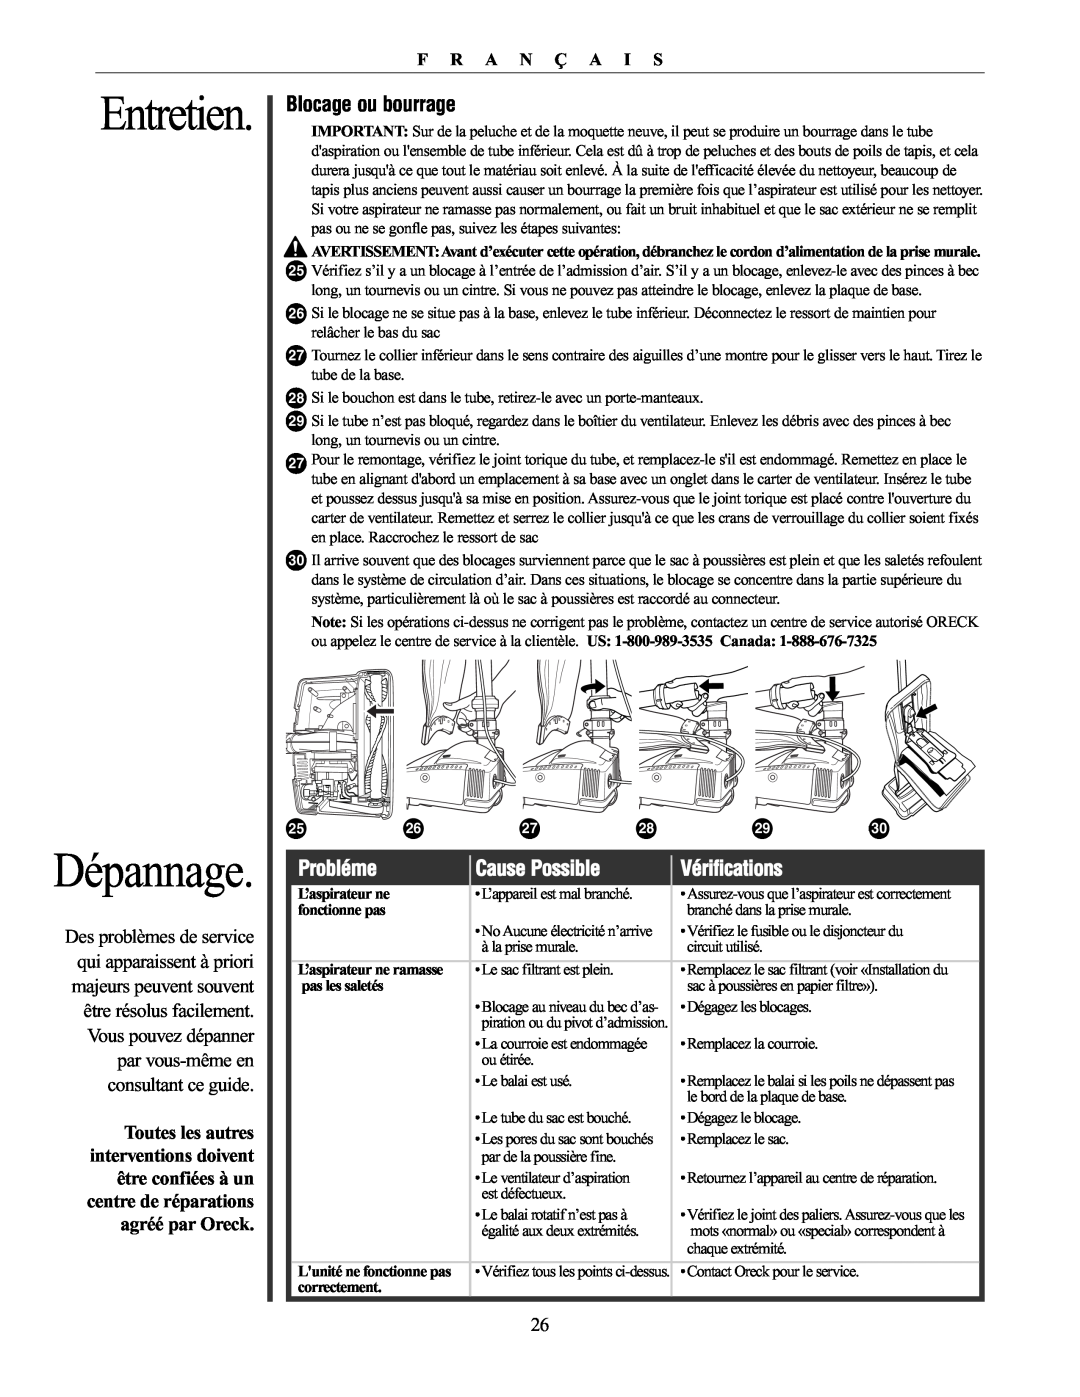 Oreck XL21 manual Dépannage, Blocage ou bourrage, Probléme, Cause Possible, Vérifications, Entretien, F R A N Ç A I S 